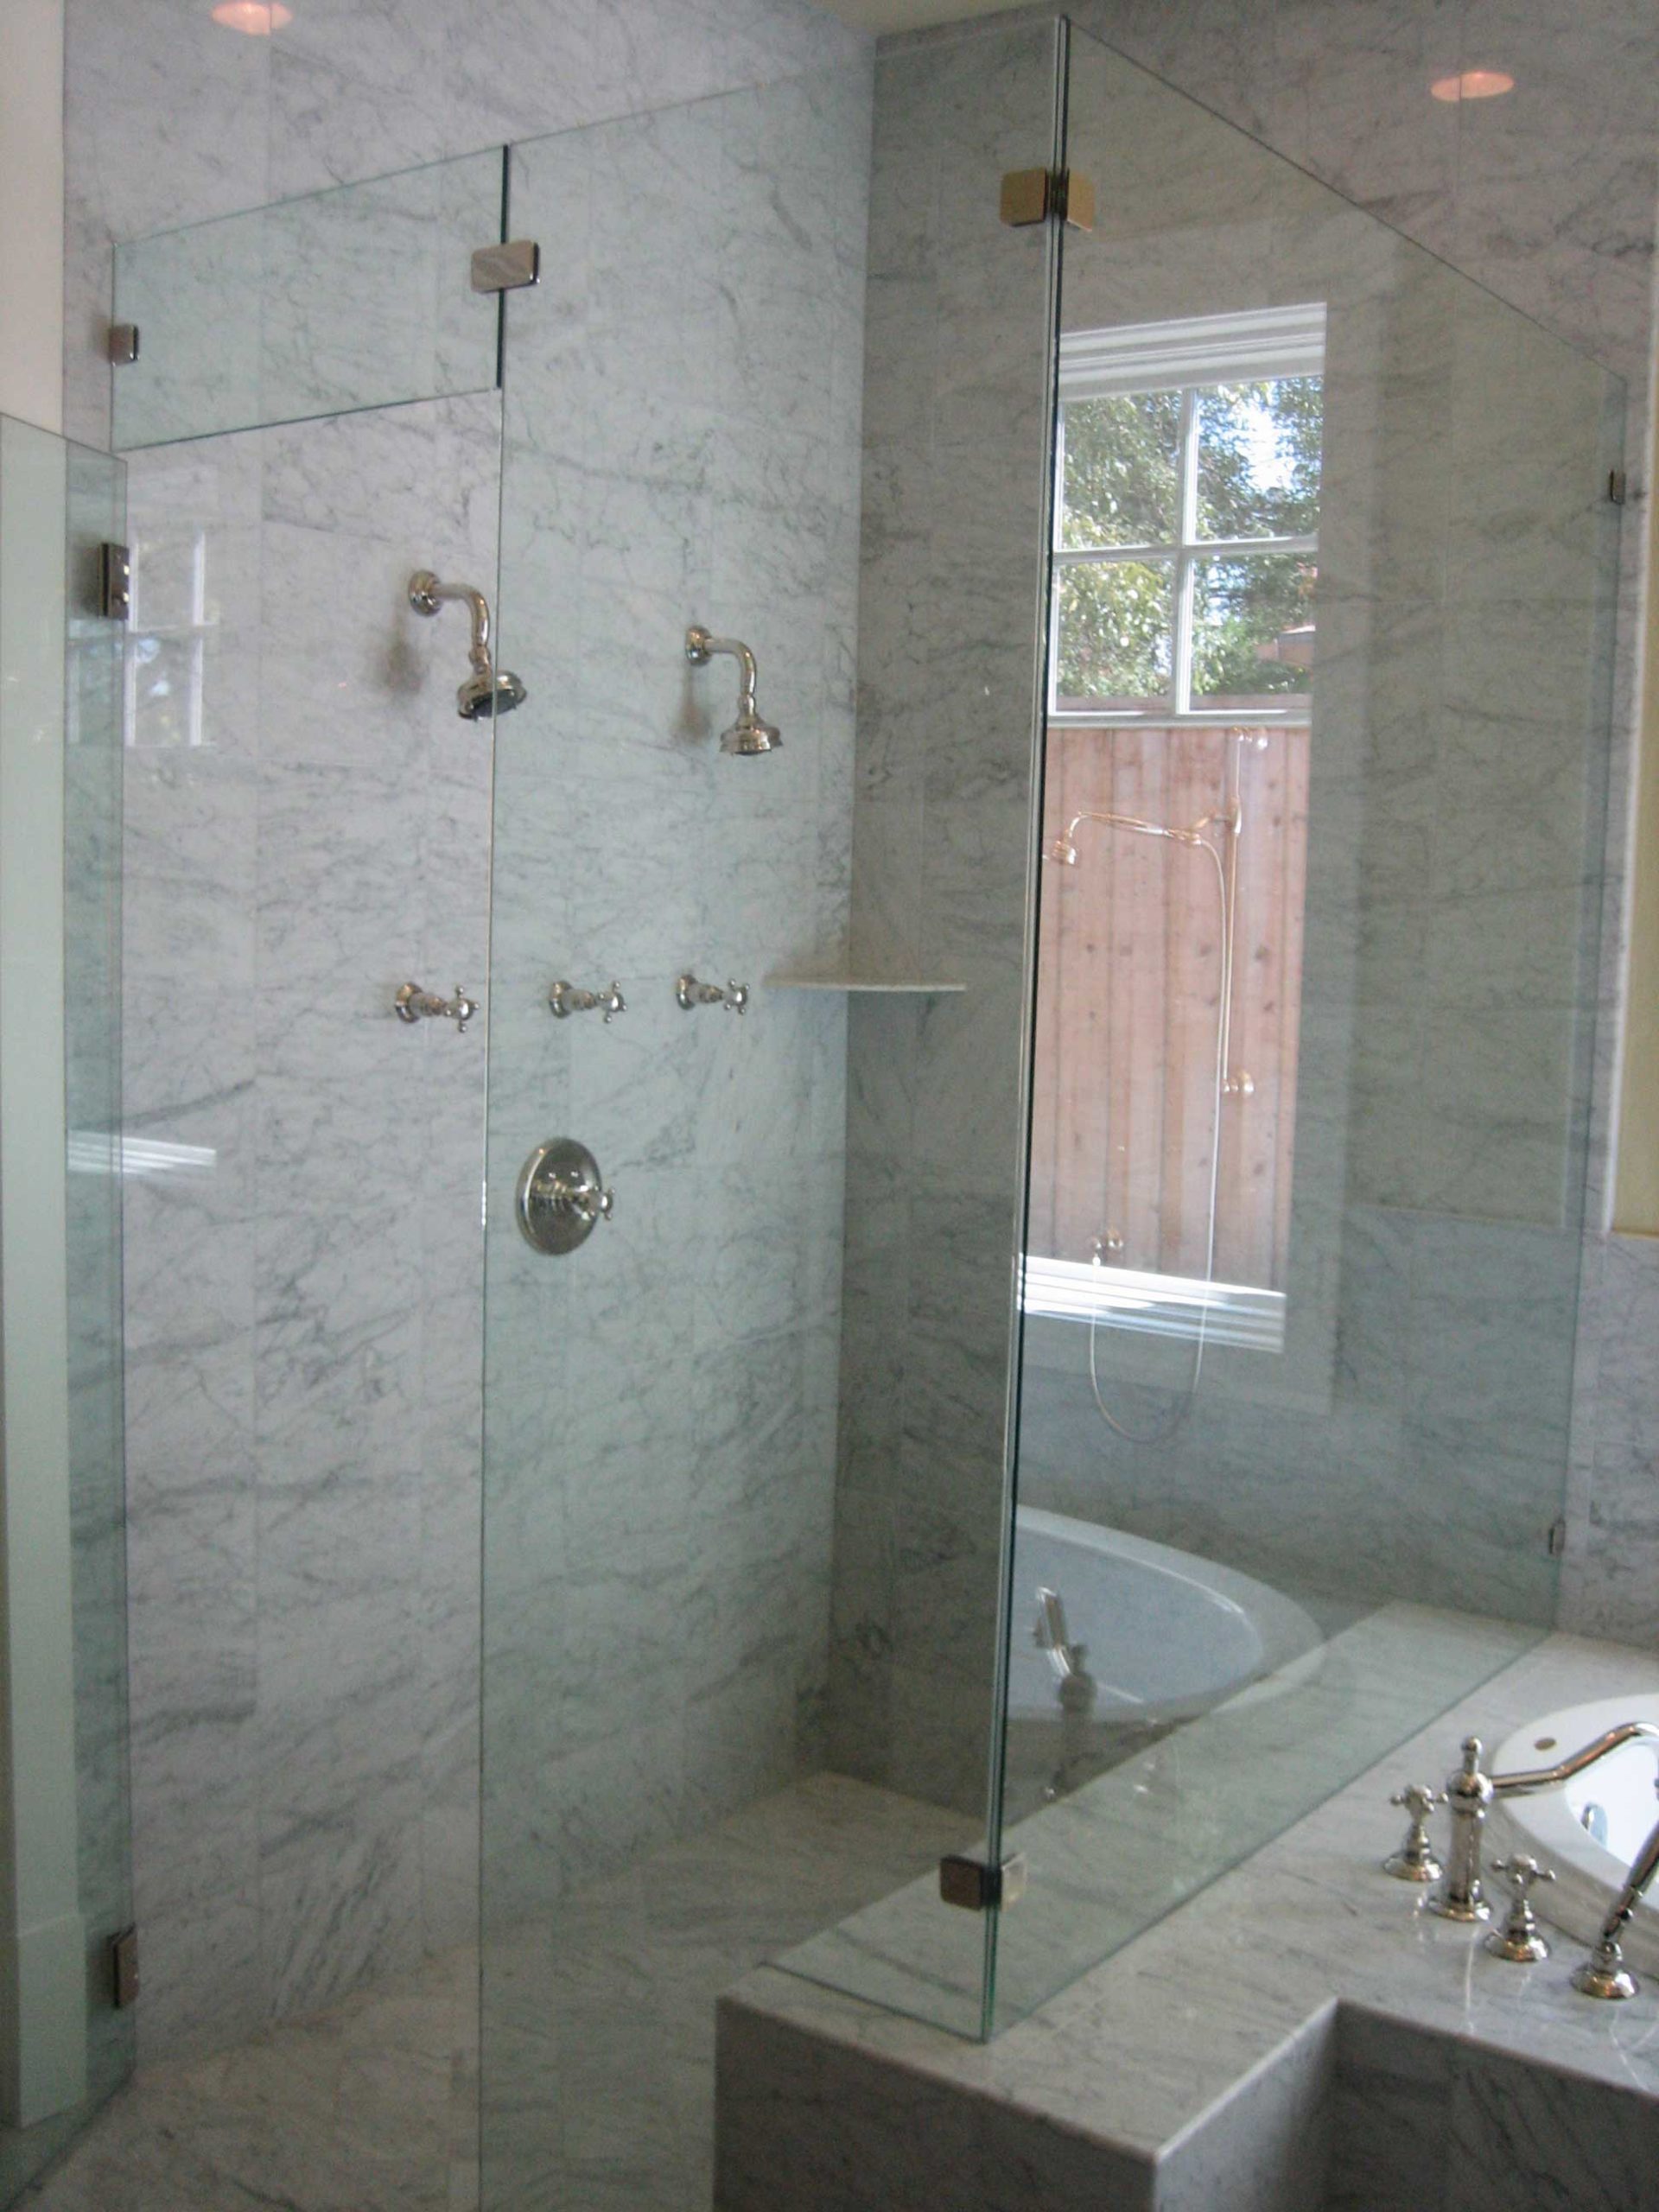 Frameless glass shower doors in luxury bathroom